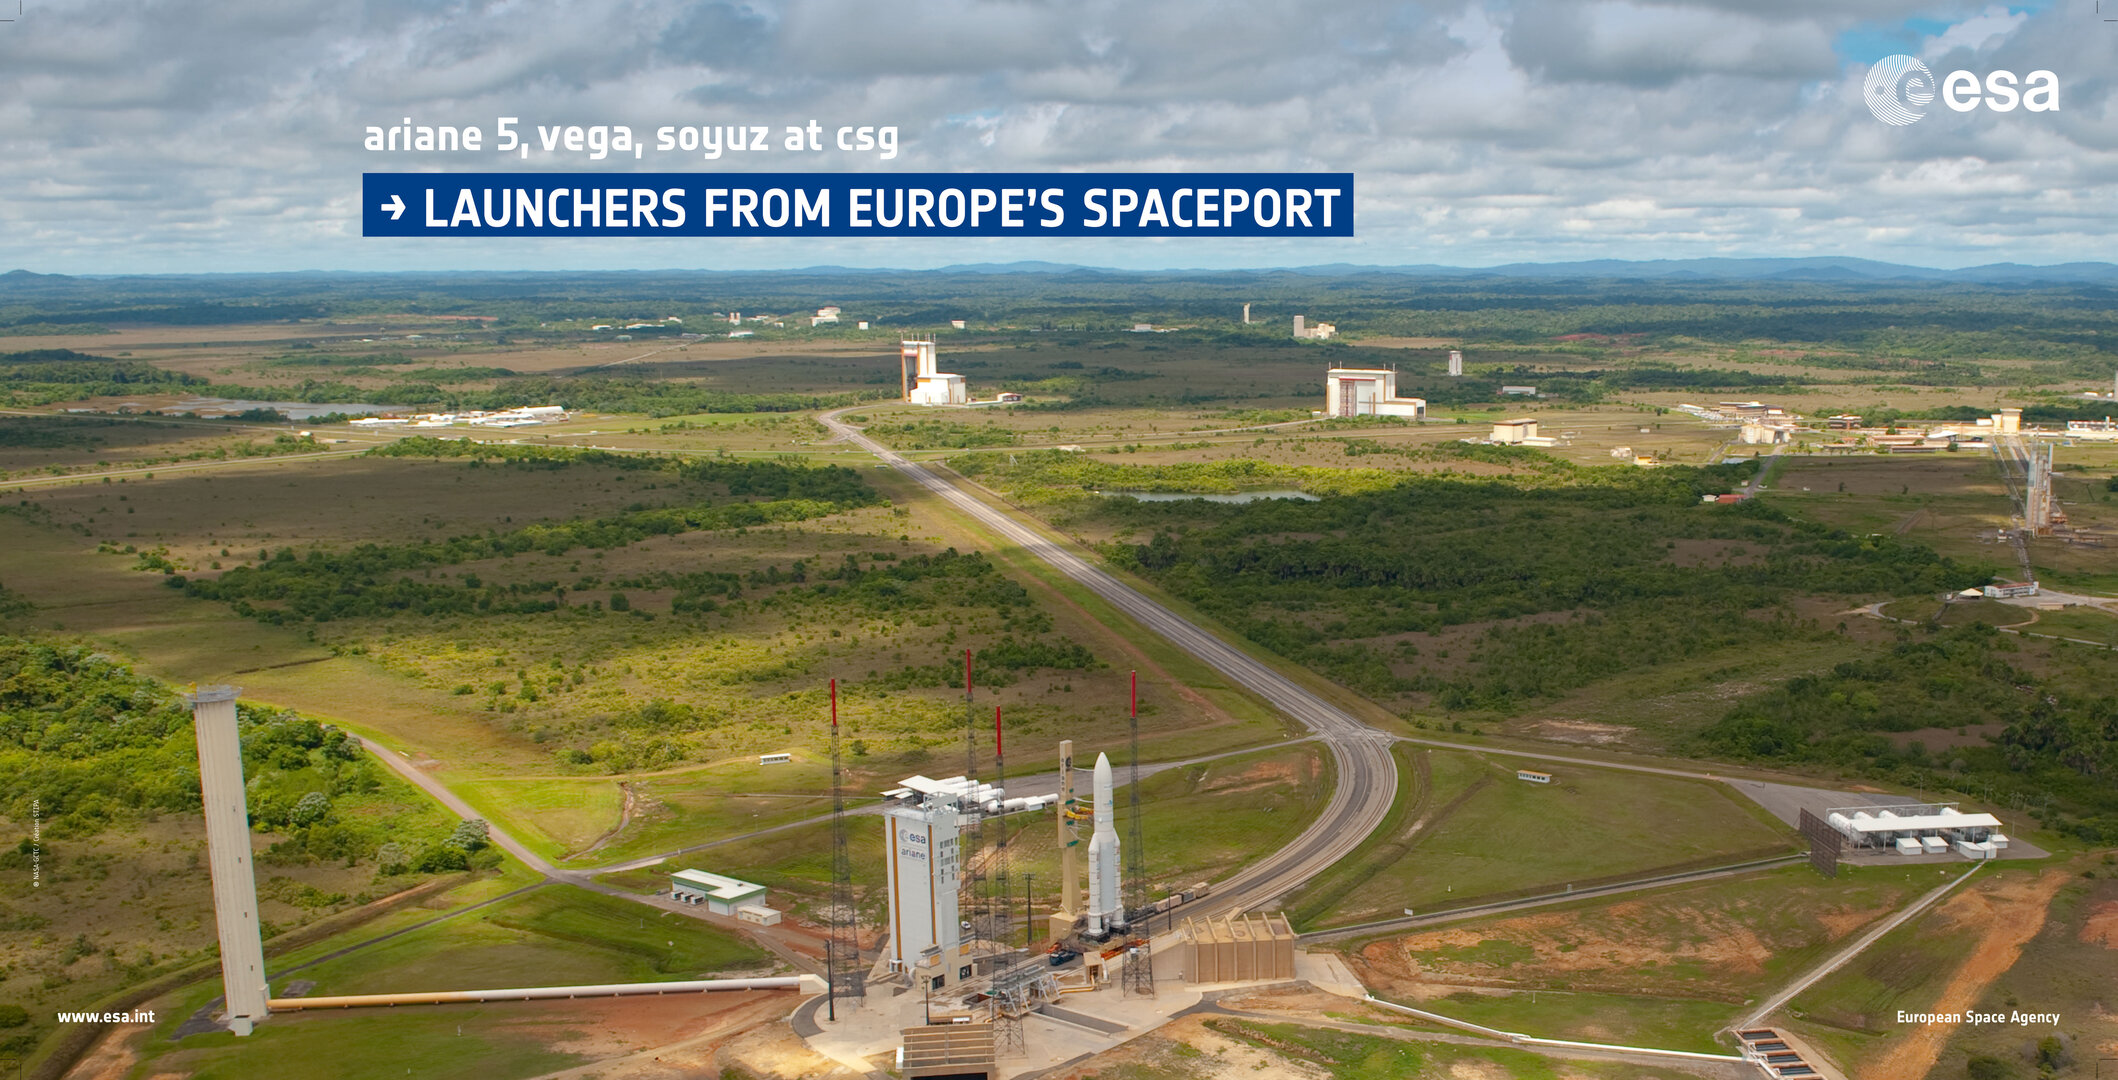 Ariane 5, Vega, Soyuz at csg